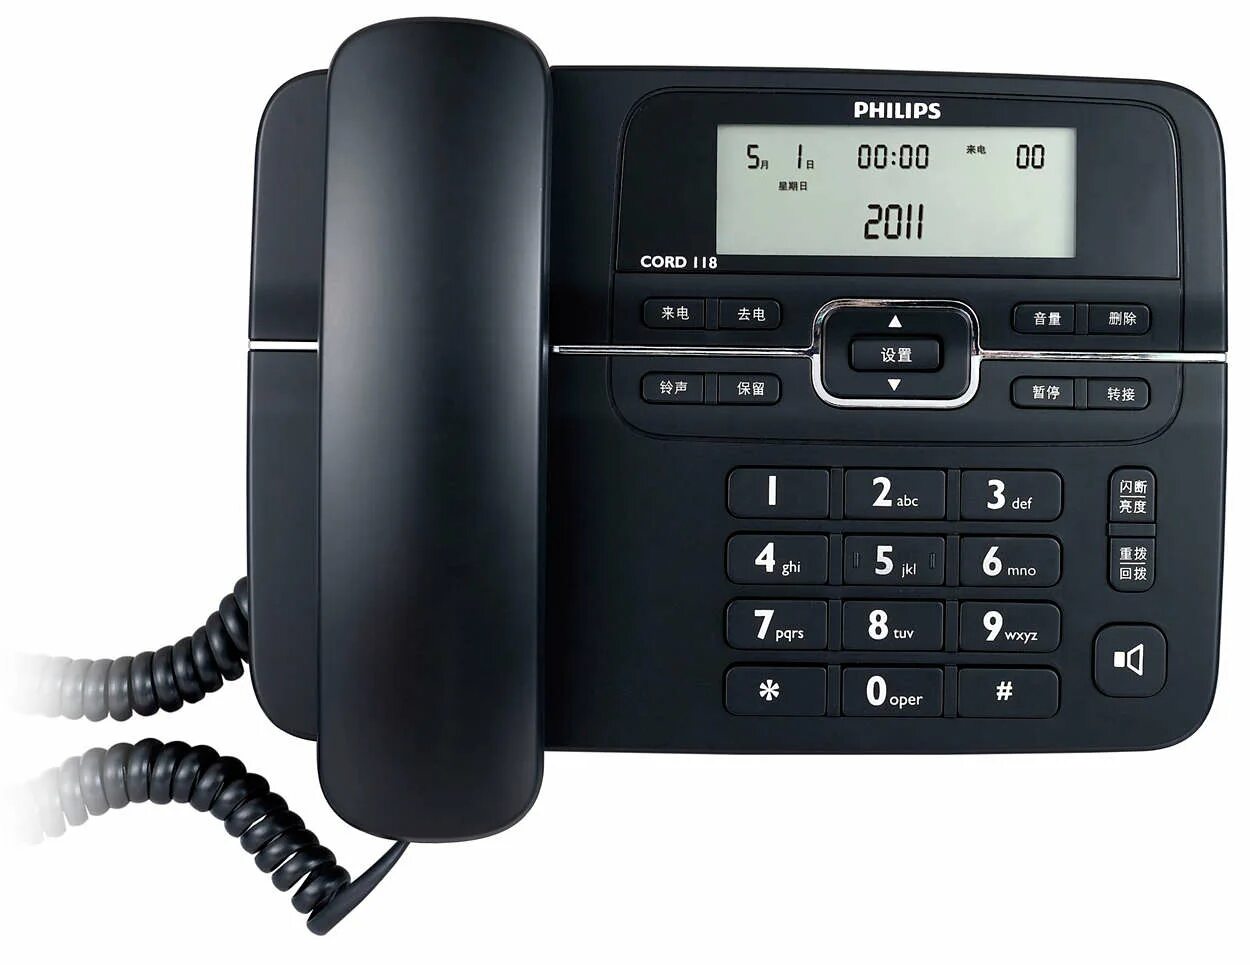 Номер телефона филипс. Проводной телефон Philips. Телефон Philips 191. Телефон Philips 198. Телефон Philips 298.